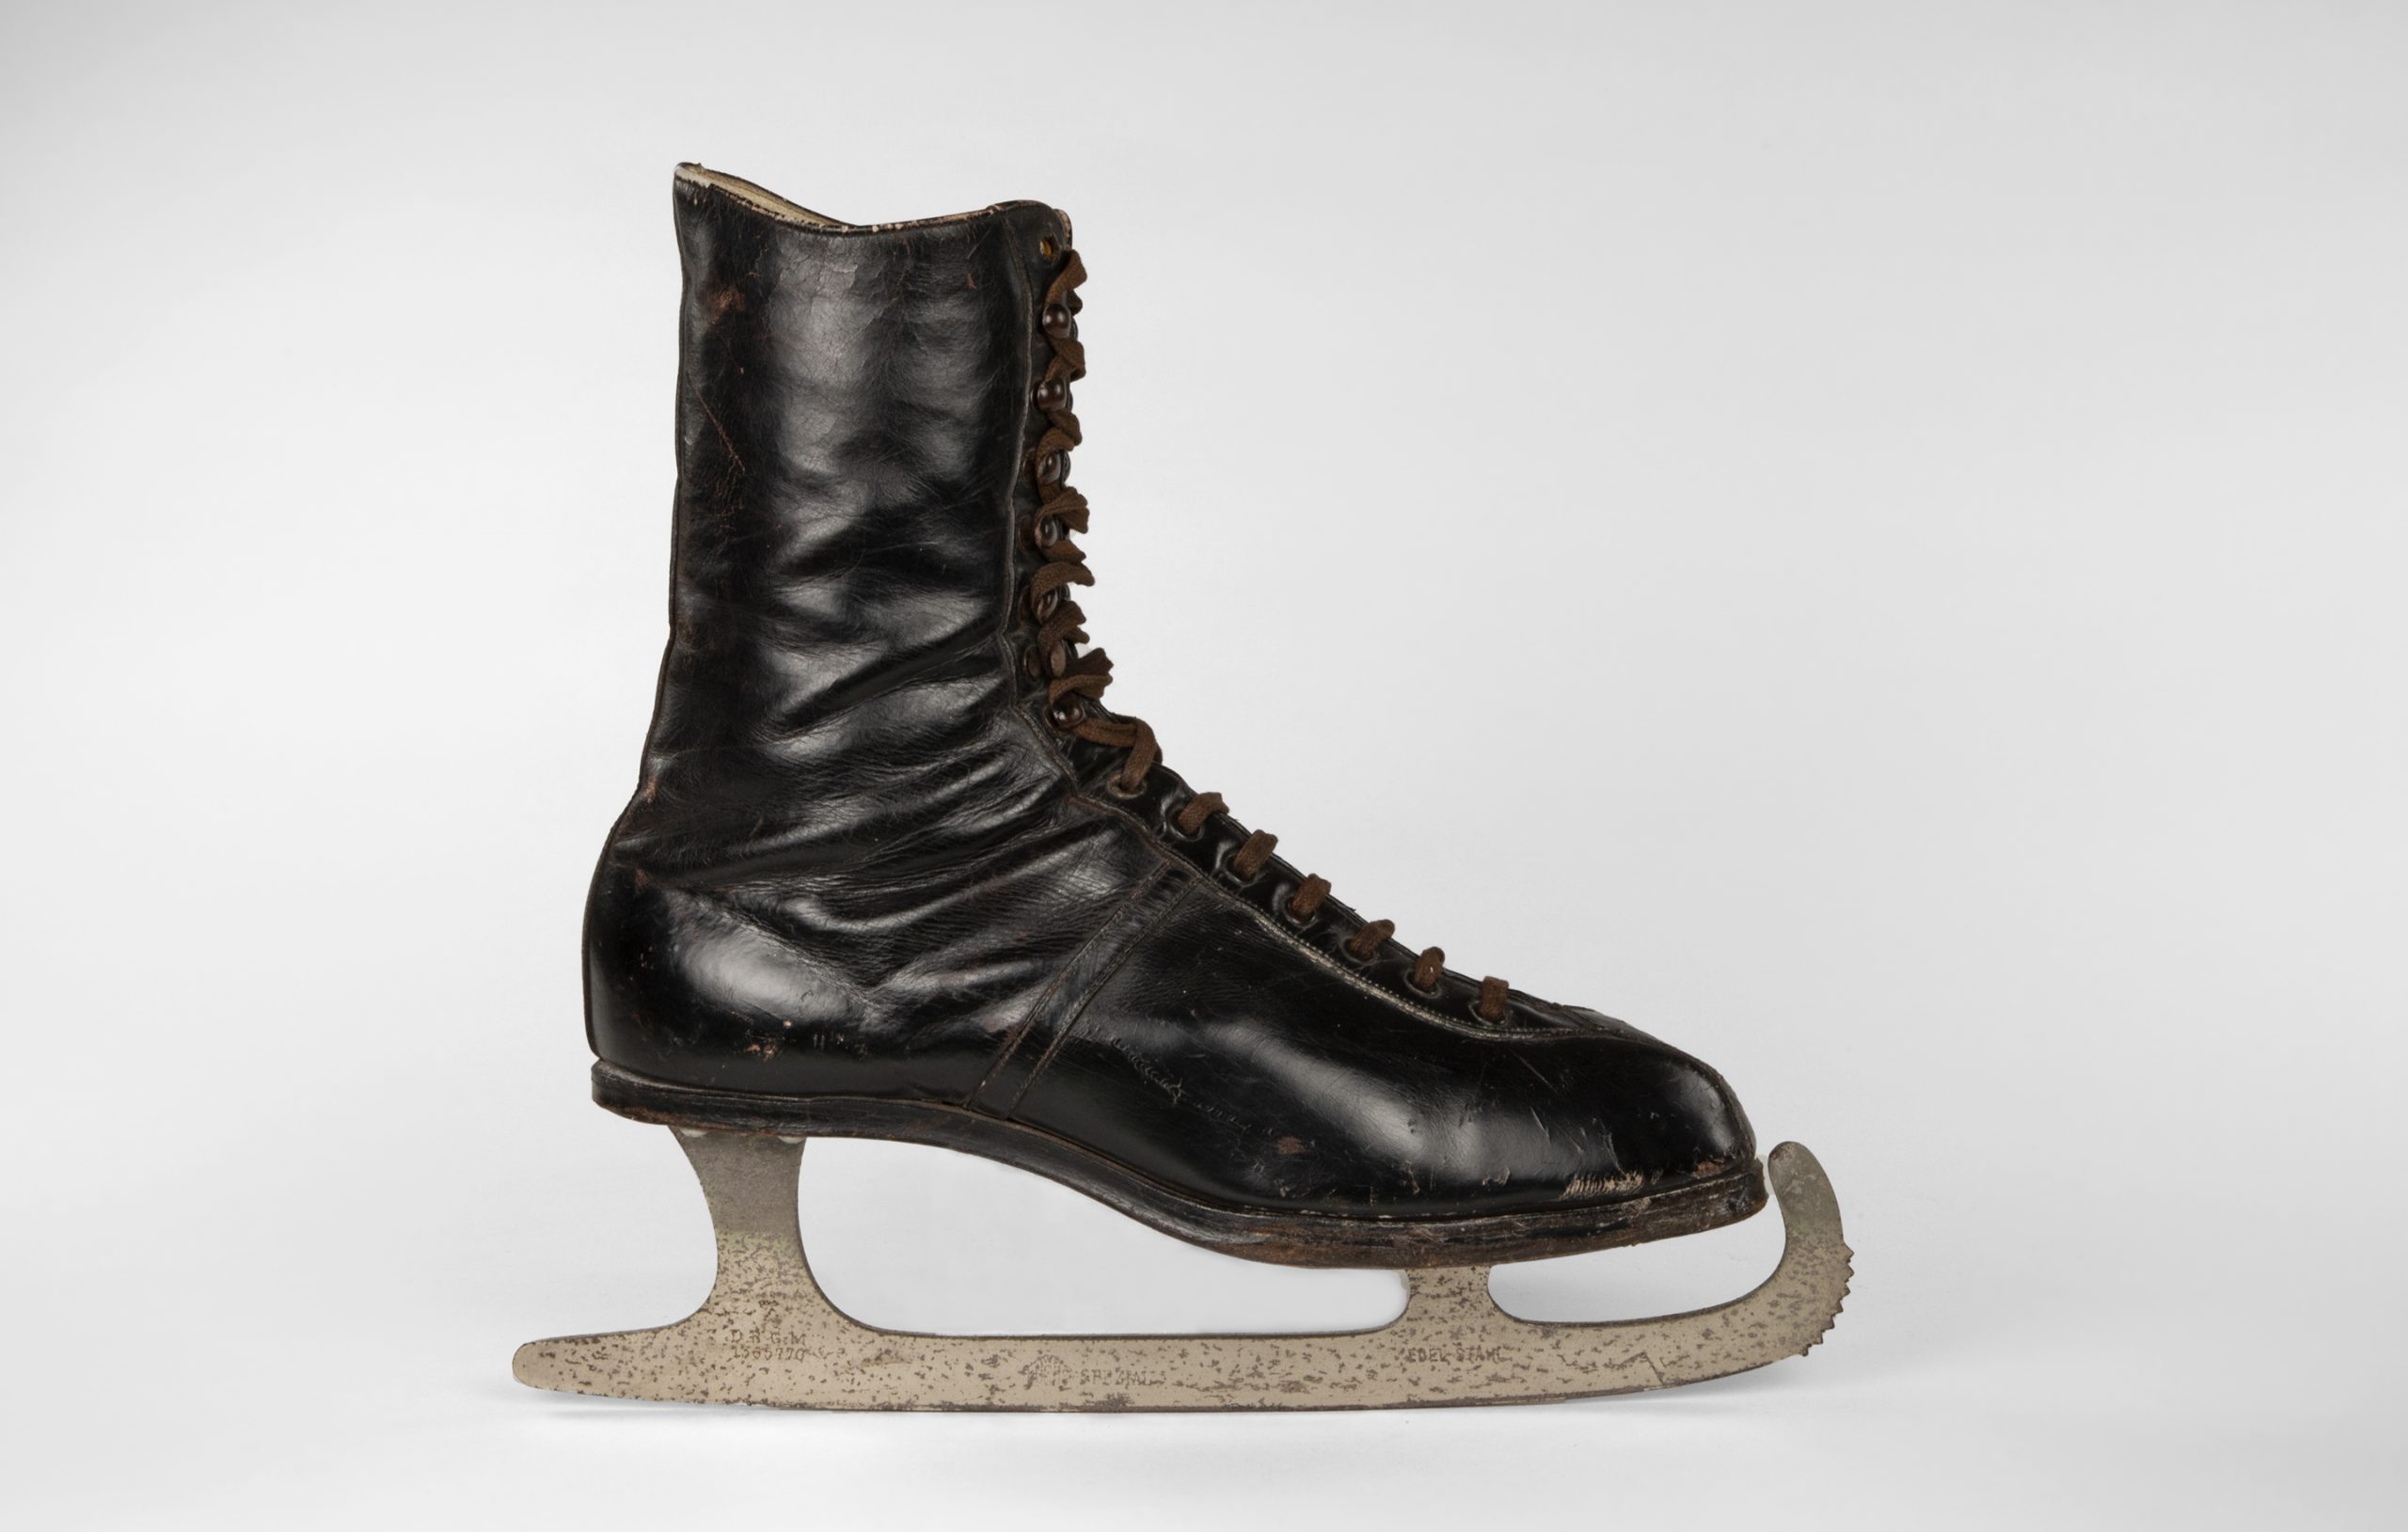 Vue de profil d’une botte en cuir noir avec des lacets brun foncé et une lame argentée fixée à la semelle de la chaussure (avec des vis invisibles).